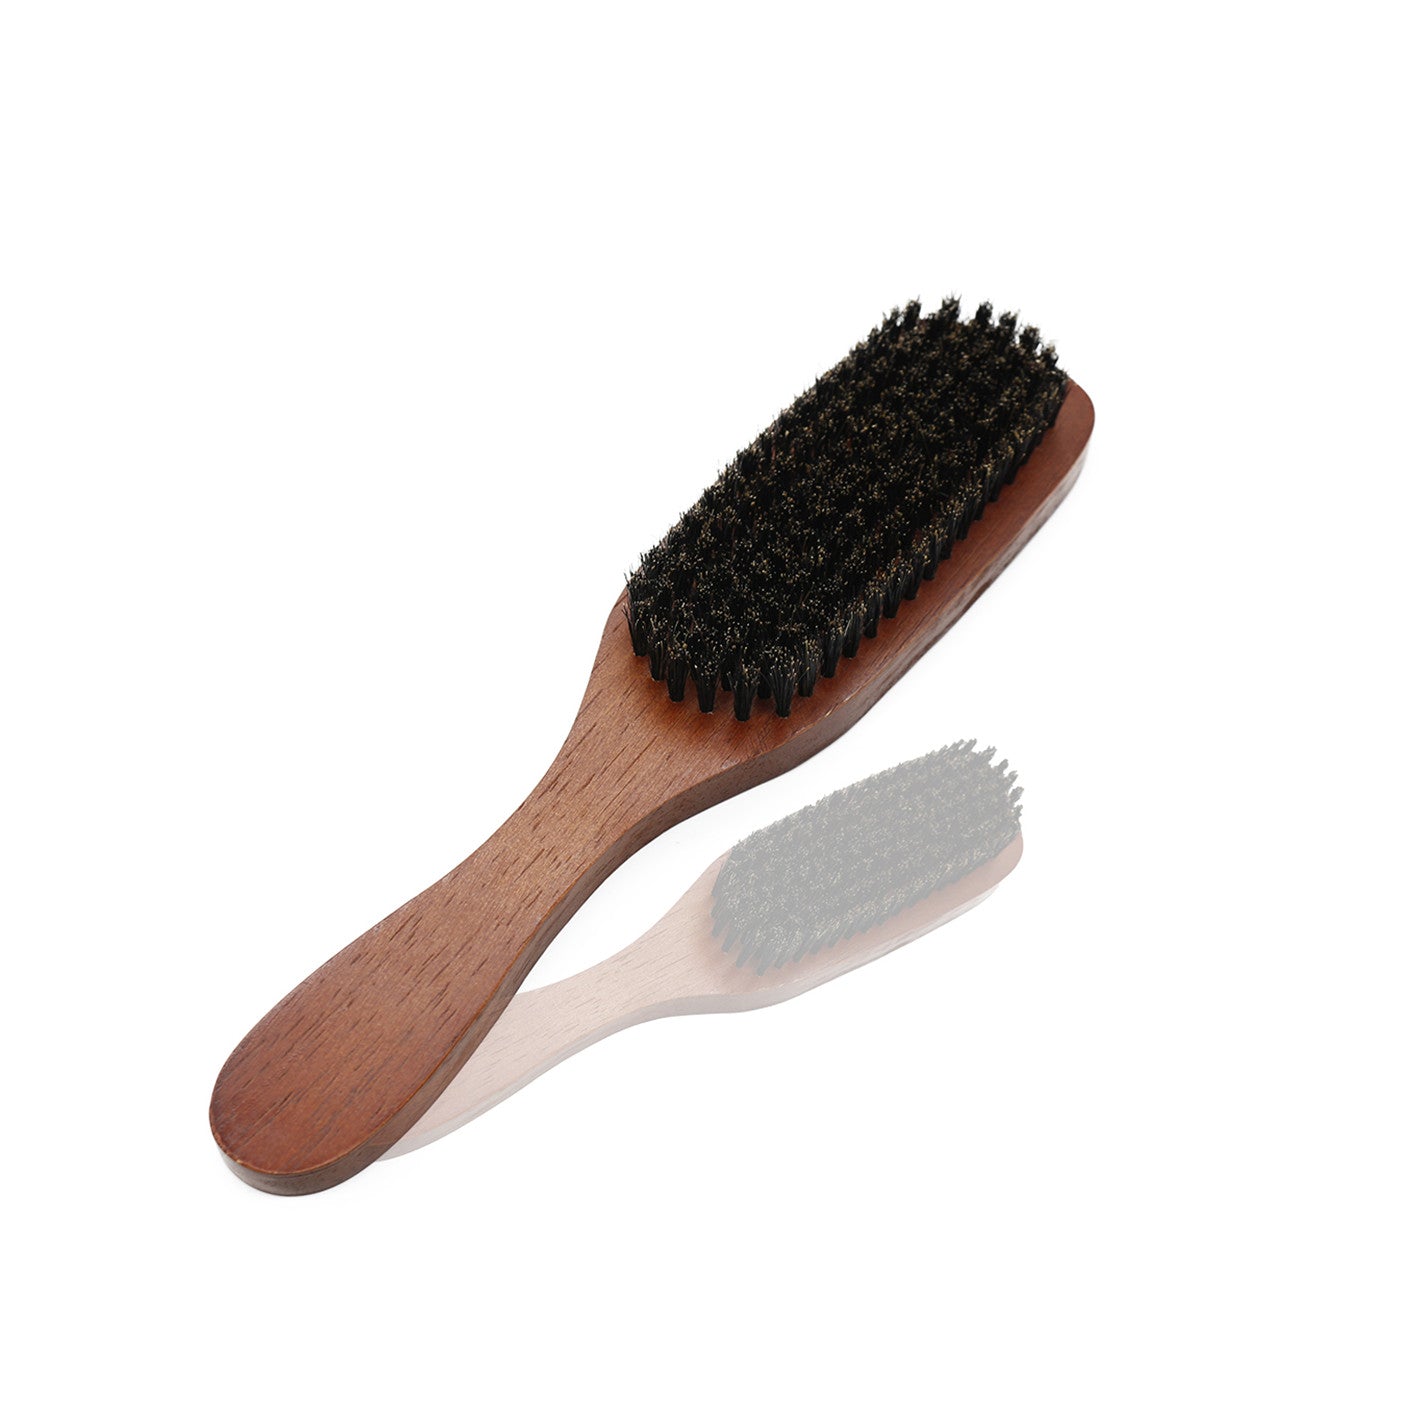 Large beard paddle brush